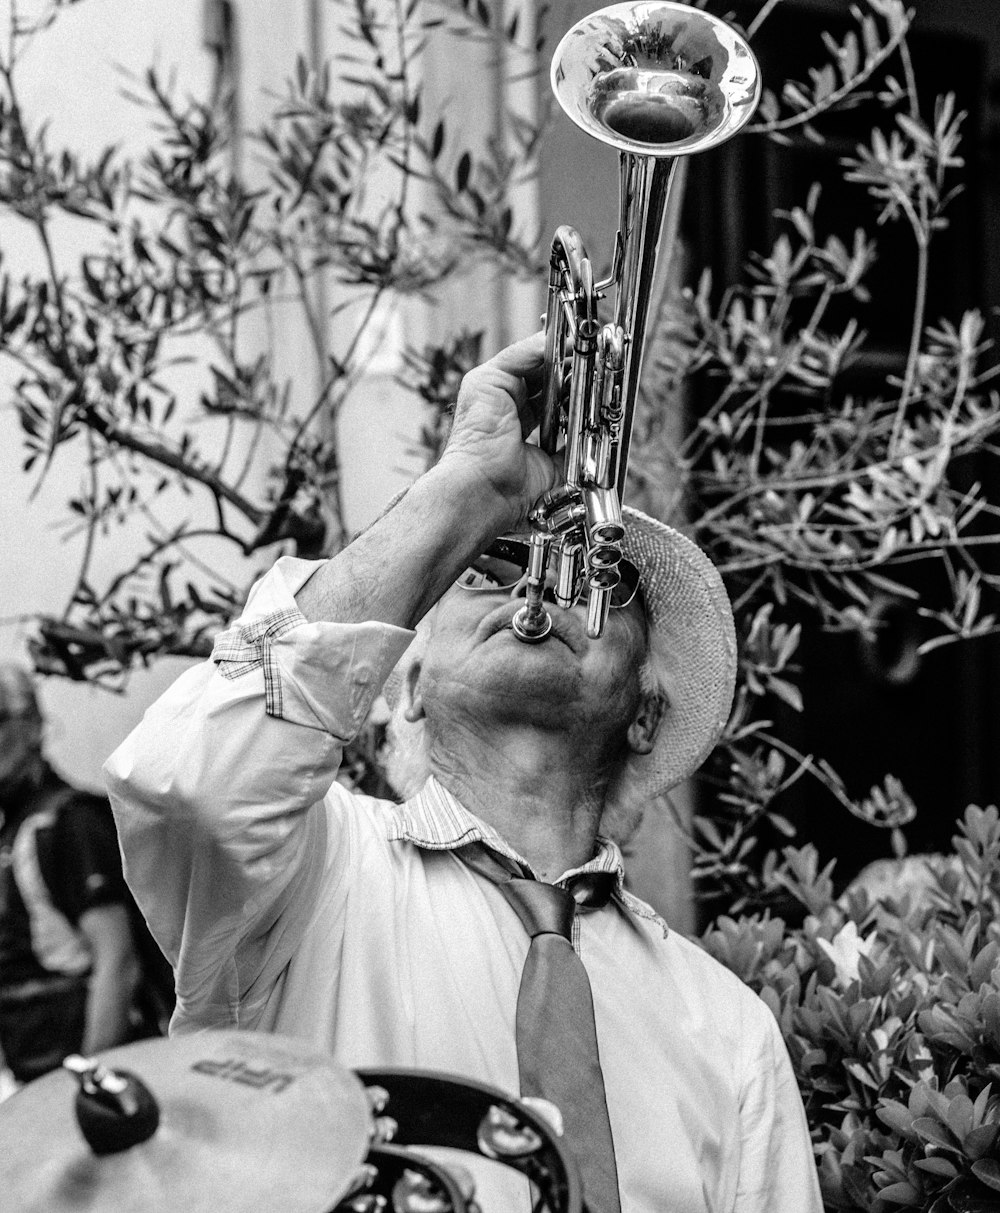 트럼펫을 연주하는 남자의 회색조 사진